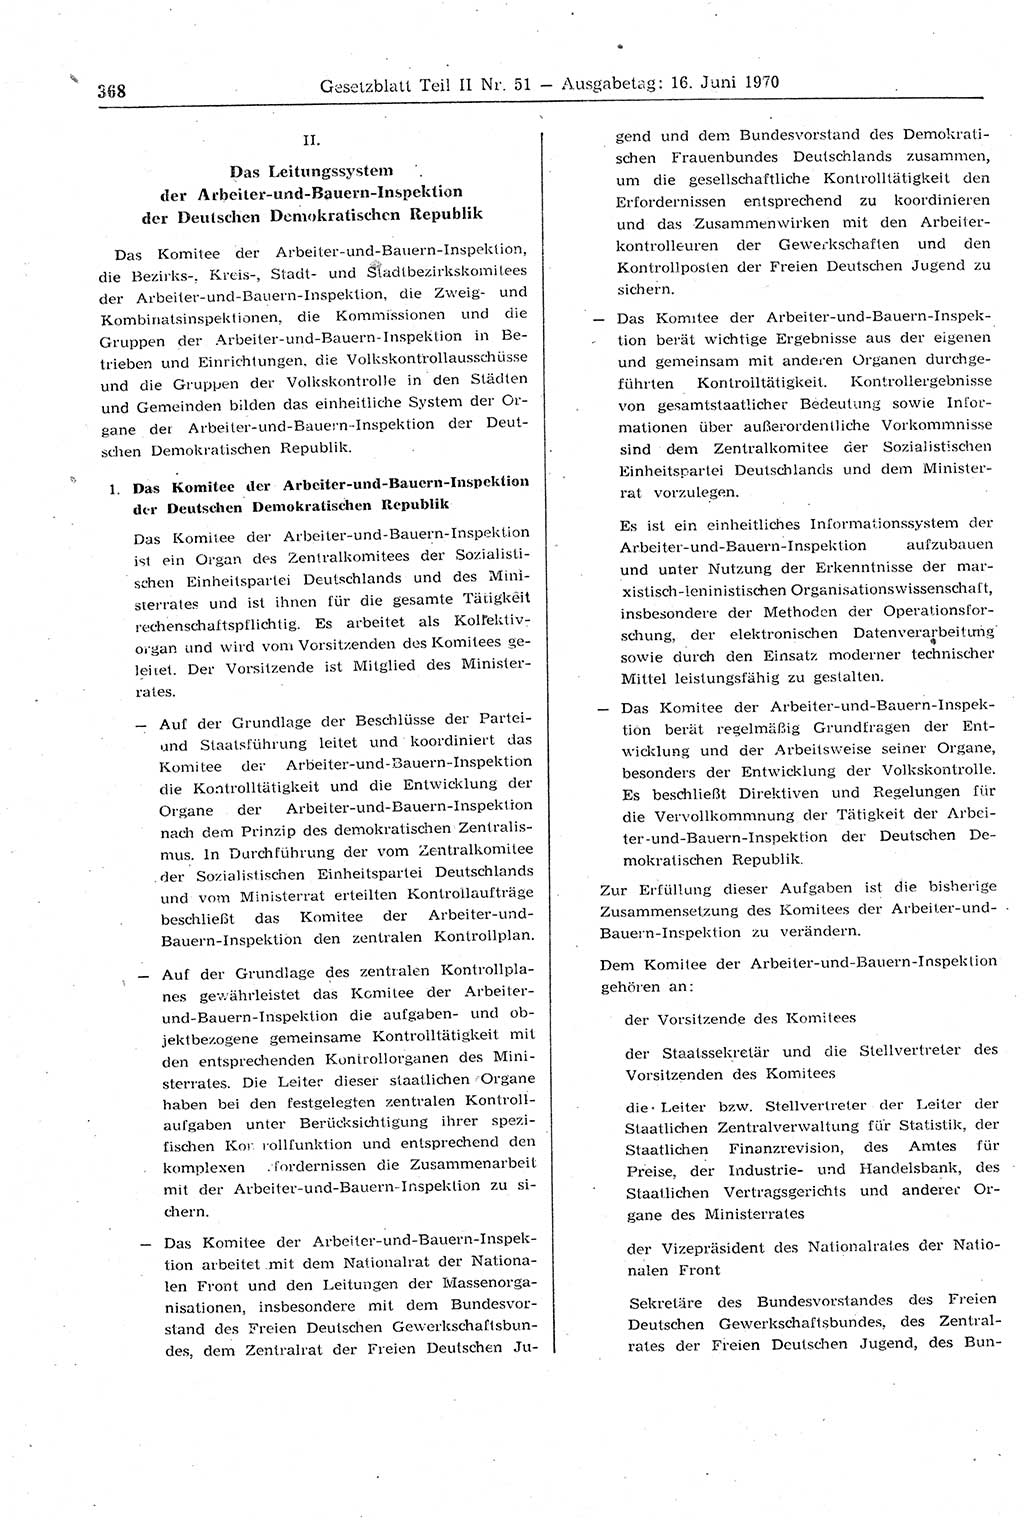 Gesetzblatt (GBl.) der Deutschen Demokratischen Republik (DDR) Teil ⅠⅠ 1970, Seite 368 (GBl. DDR ⅠⅠ 1970, S. 368)